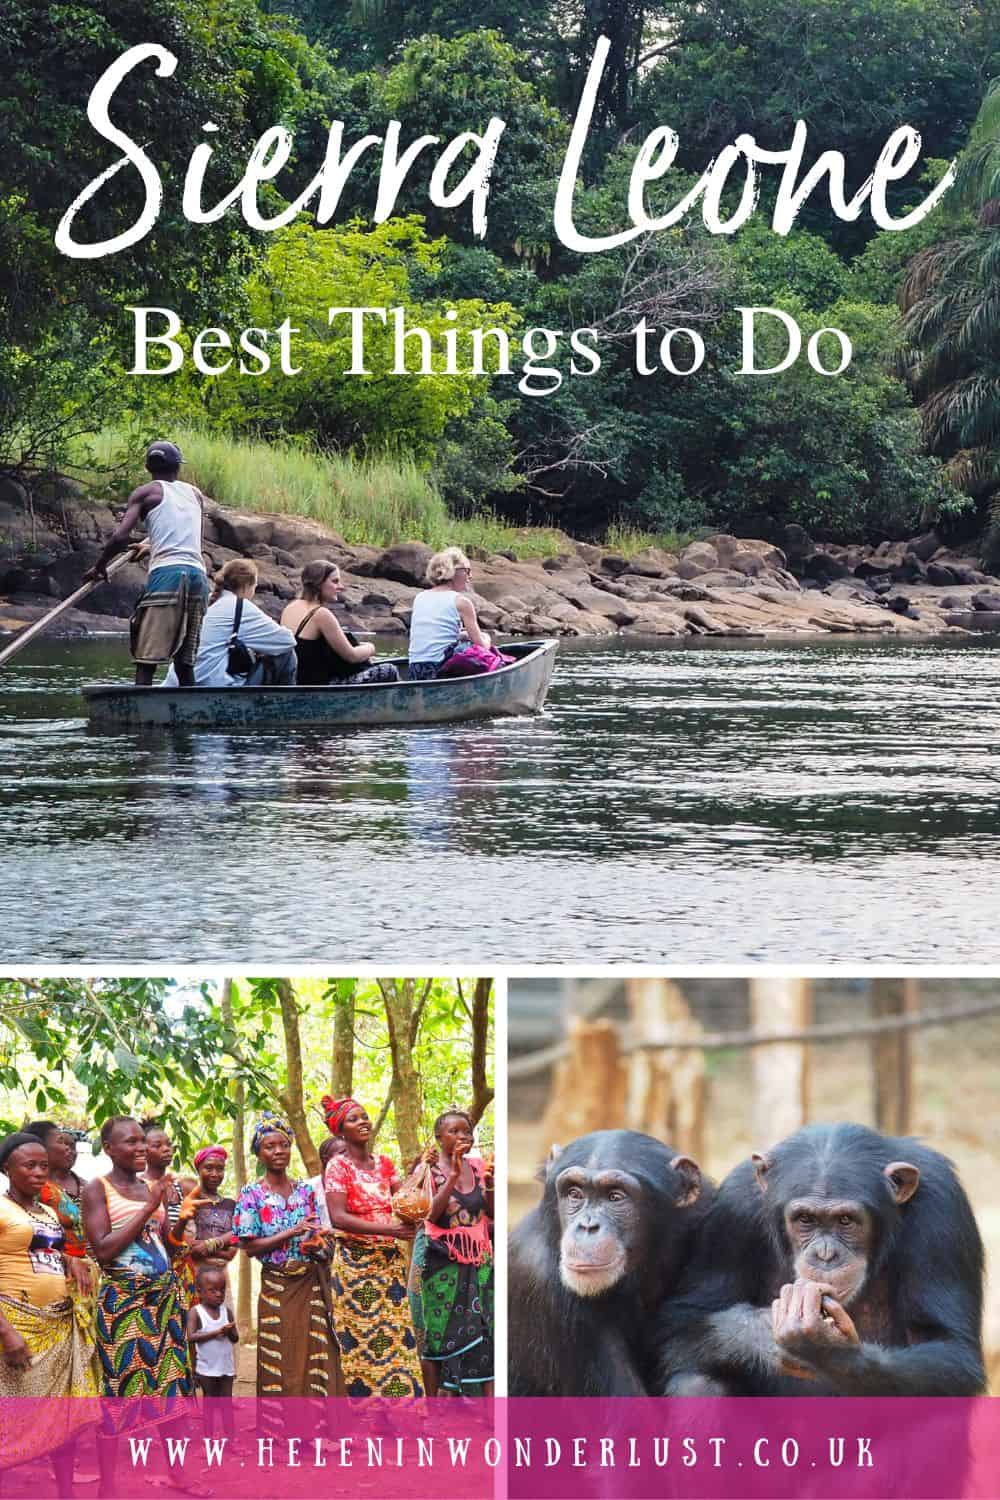 Best Things to Do in Sierra Leone